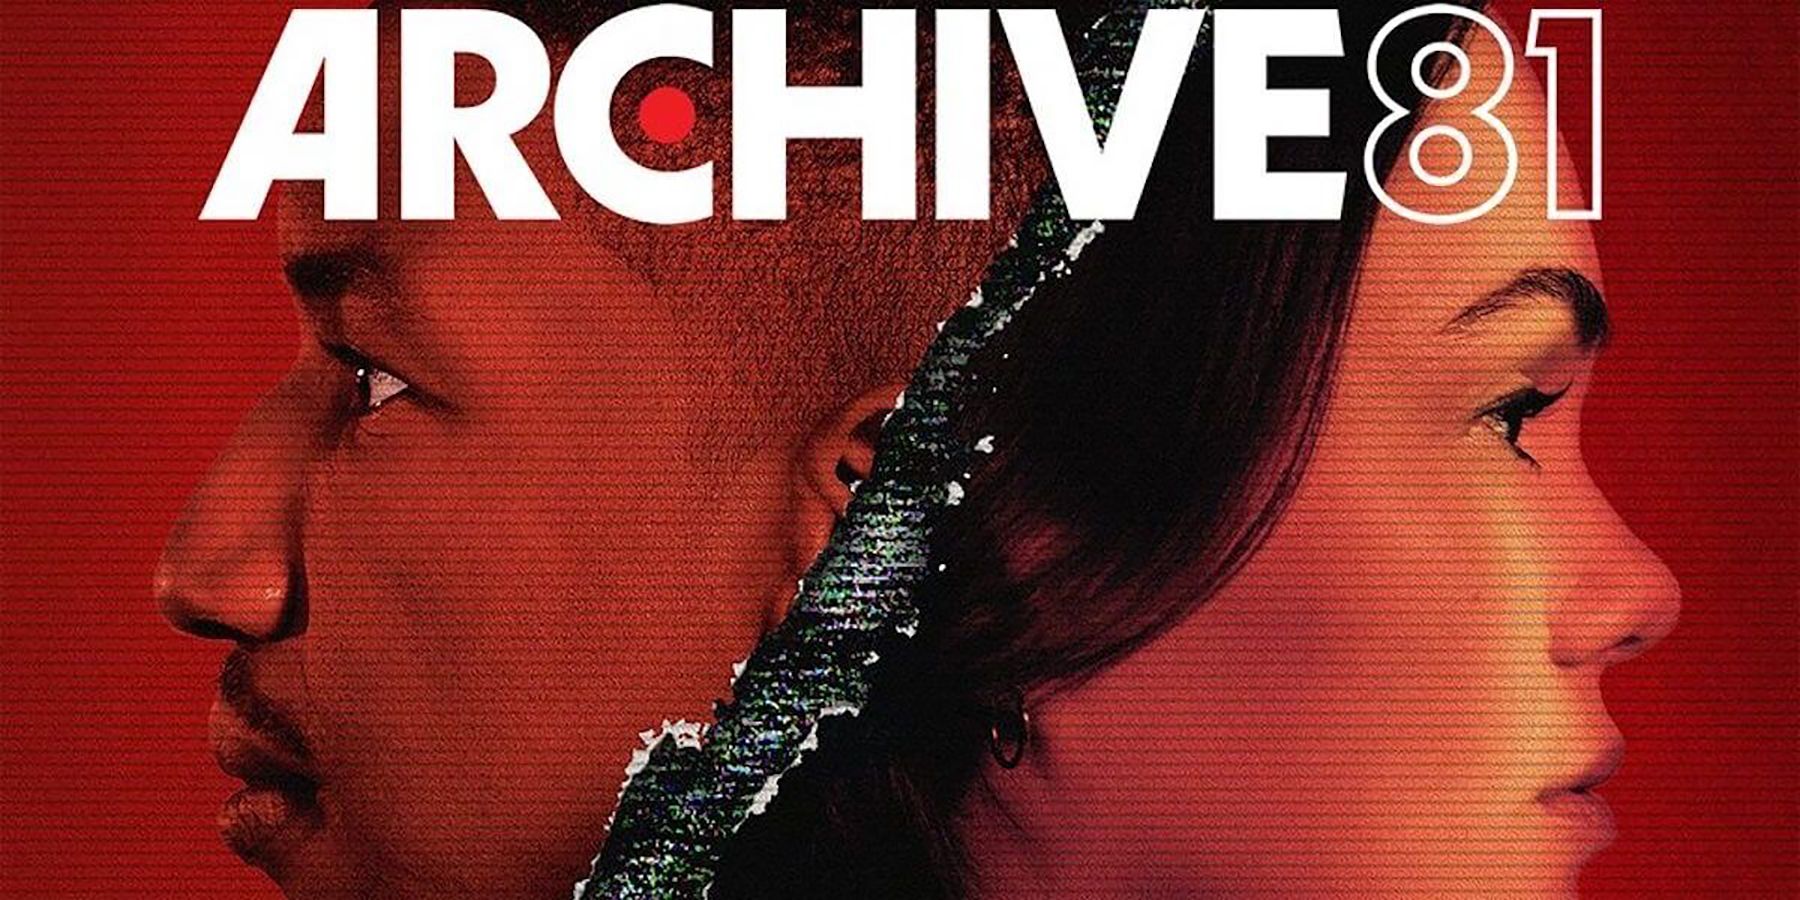 Archive 81 Netflix